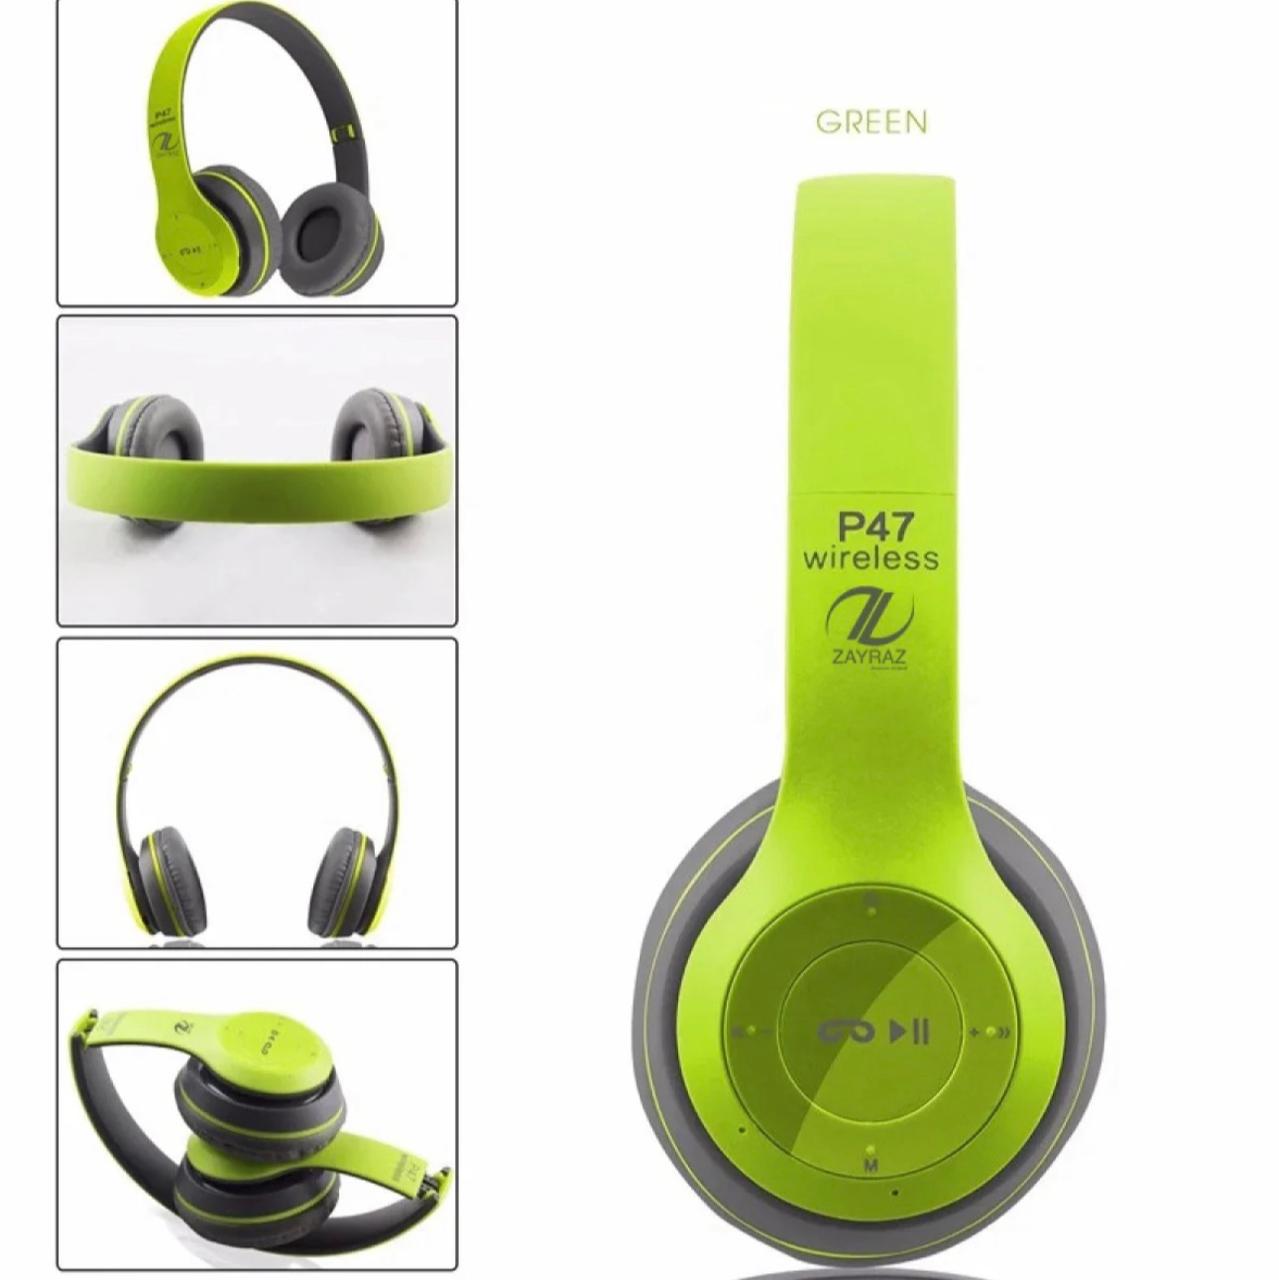 P47 wireless headphones